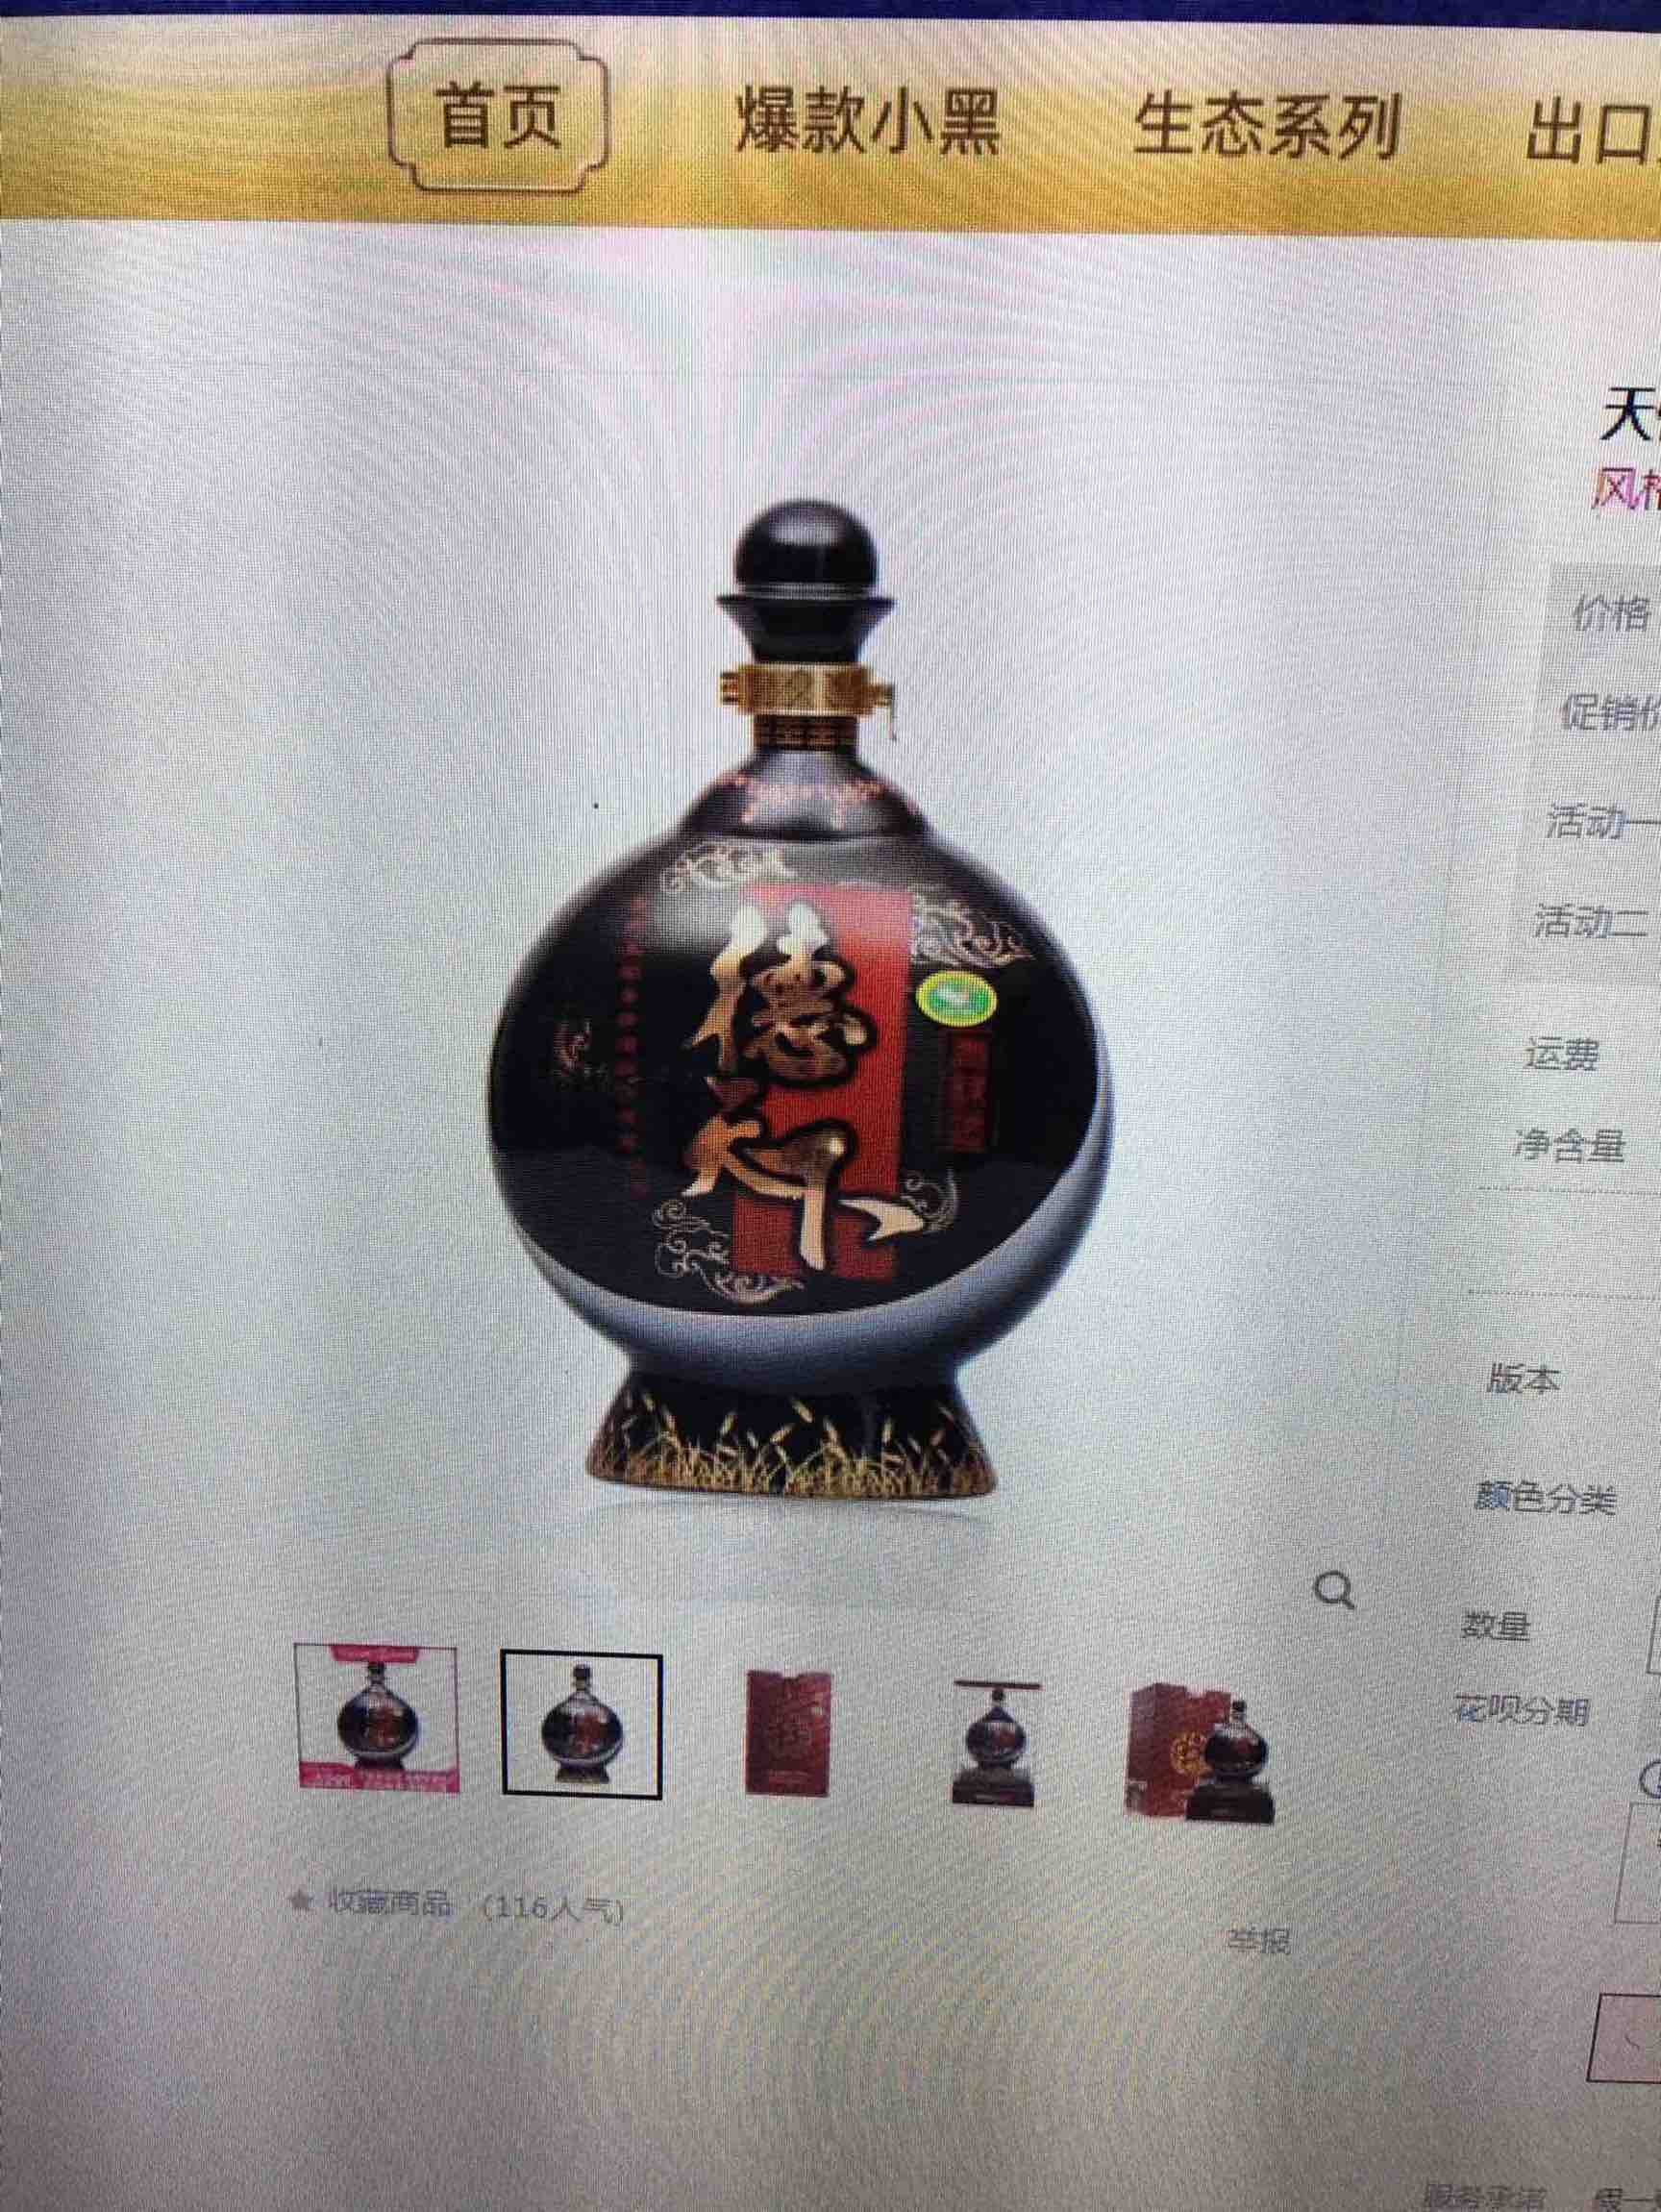 天佑德青稞酒纯净系列图片